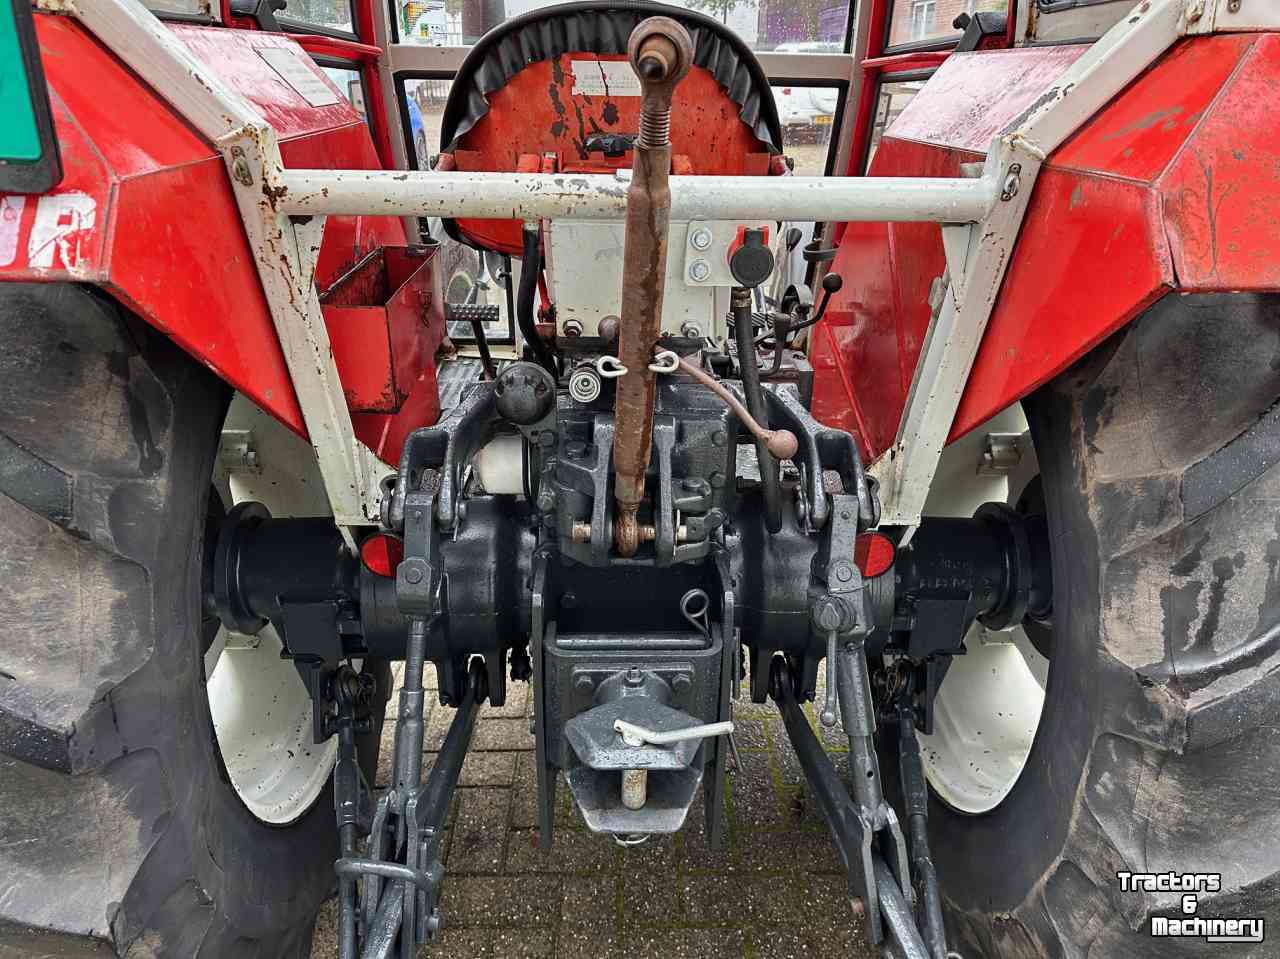 Tracteurs Steyr 8055A